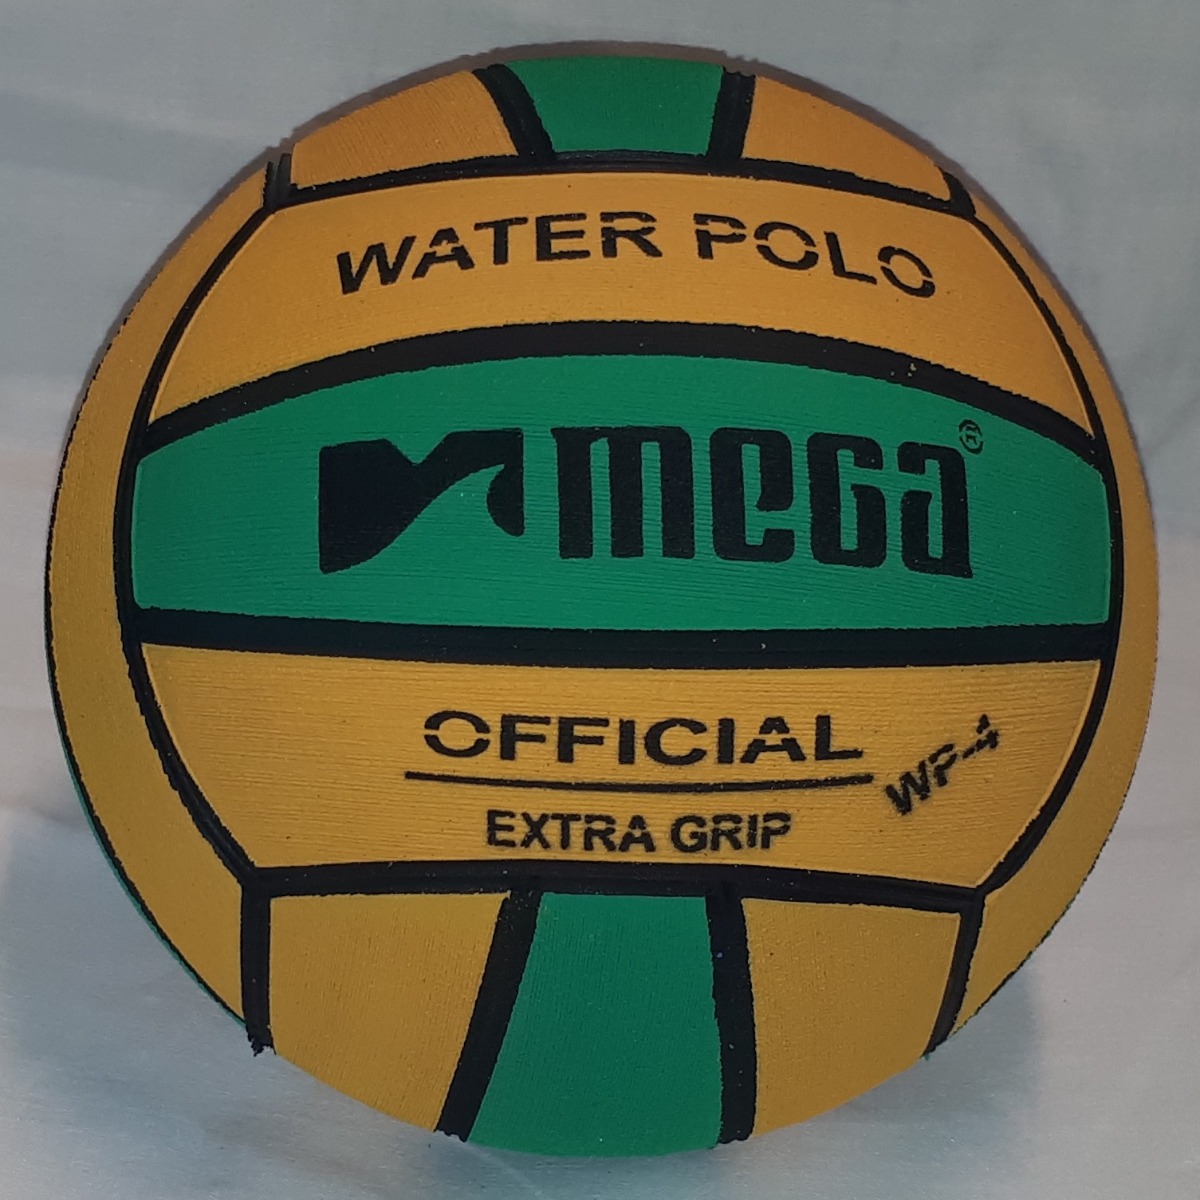  blu giallo verde taglia 4 Swirl design Mega Water polo Ball  